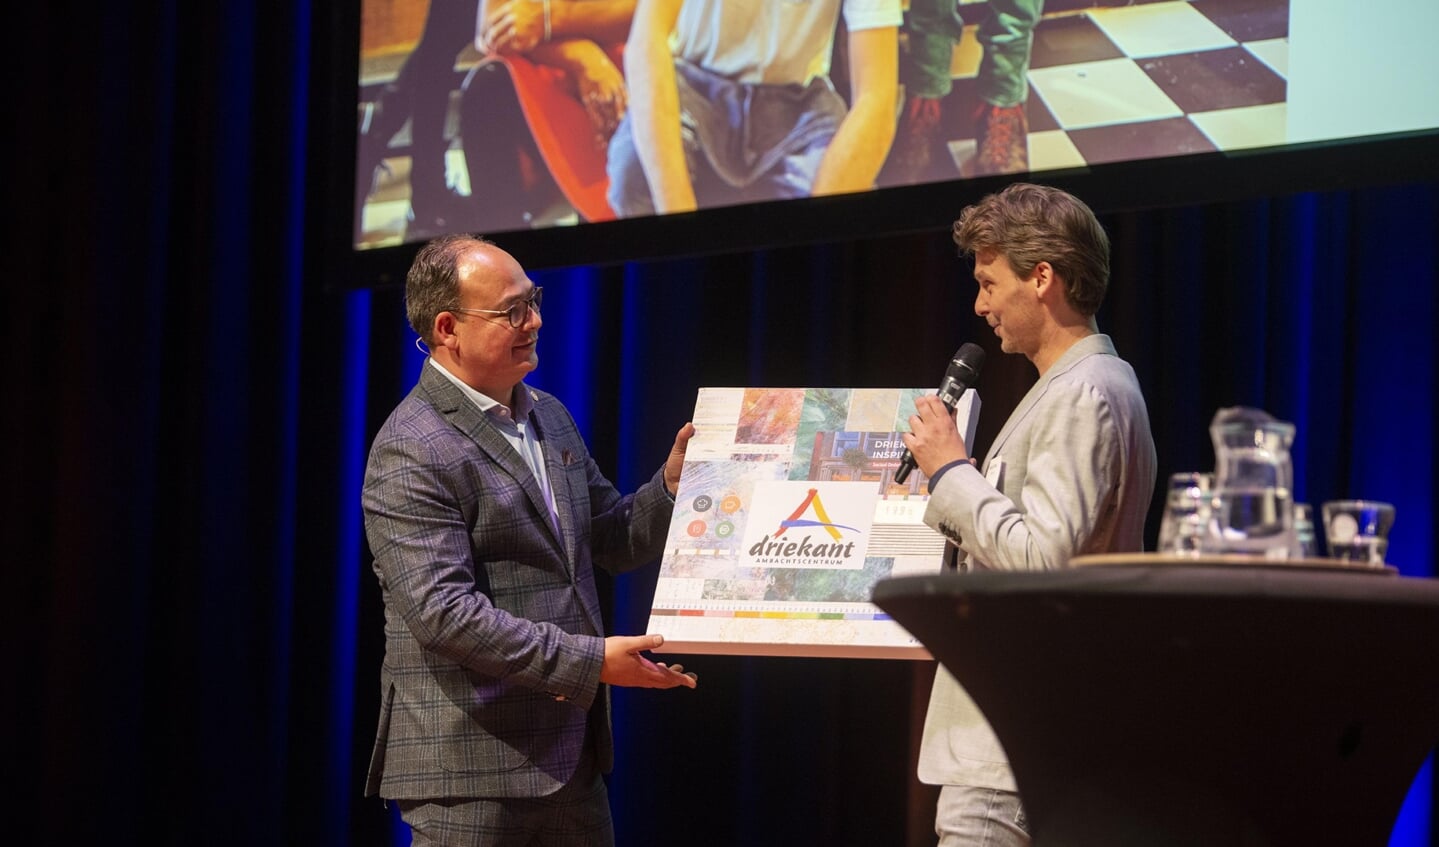 Overhandiging van de Impact Uitblinker Award aan de Marijn Smit, directeur van de Driekant uit Zutphen. Foto: PR